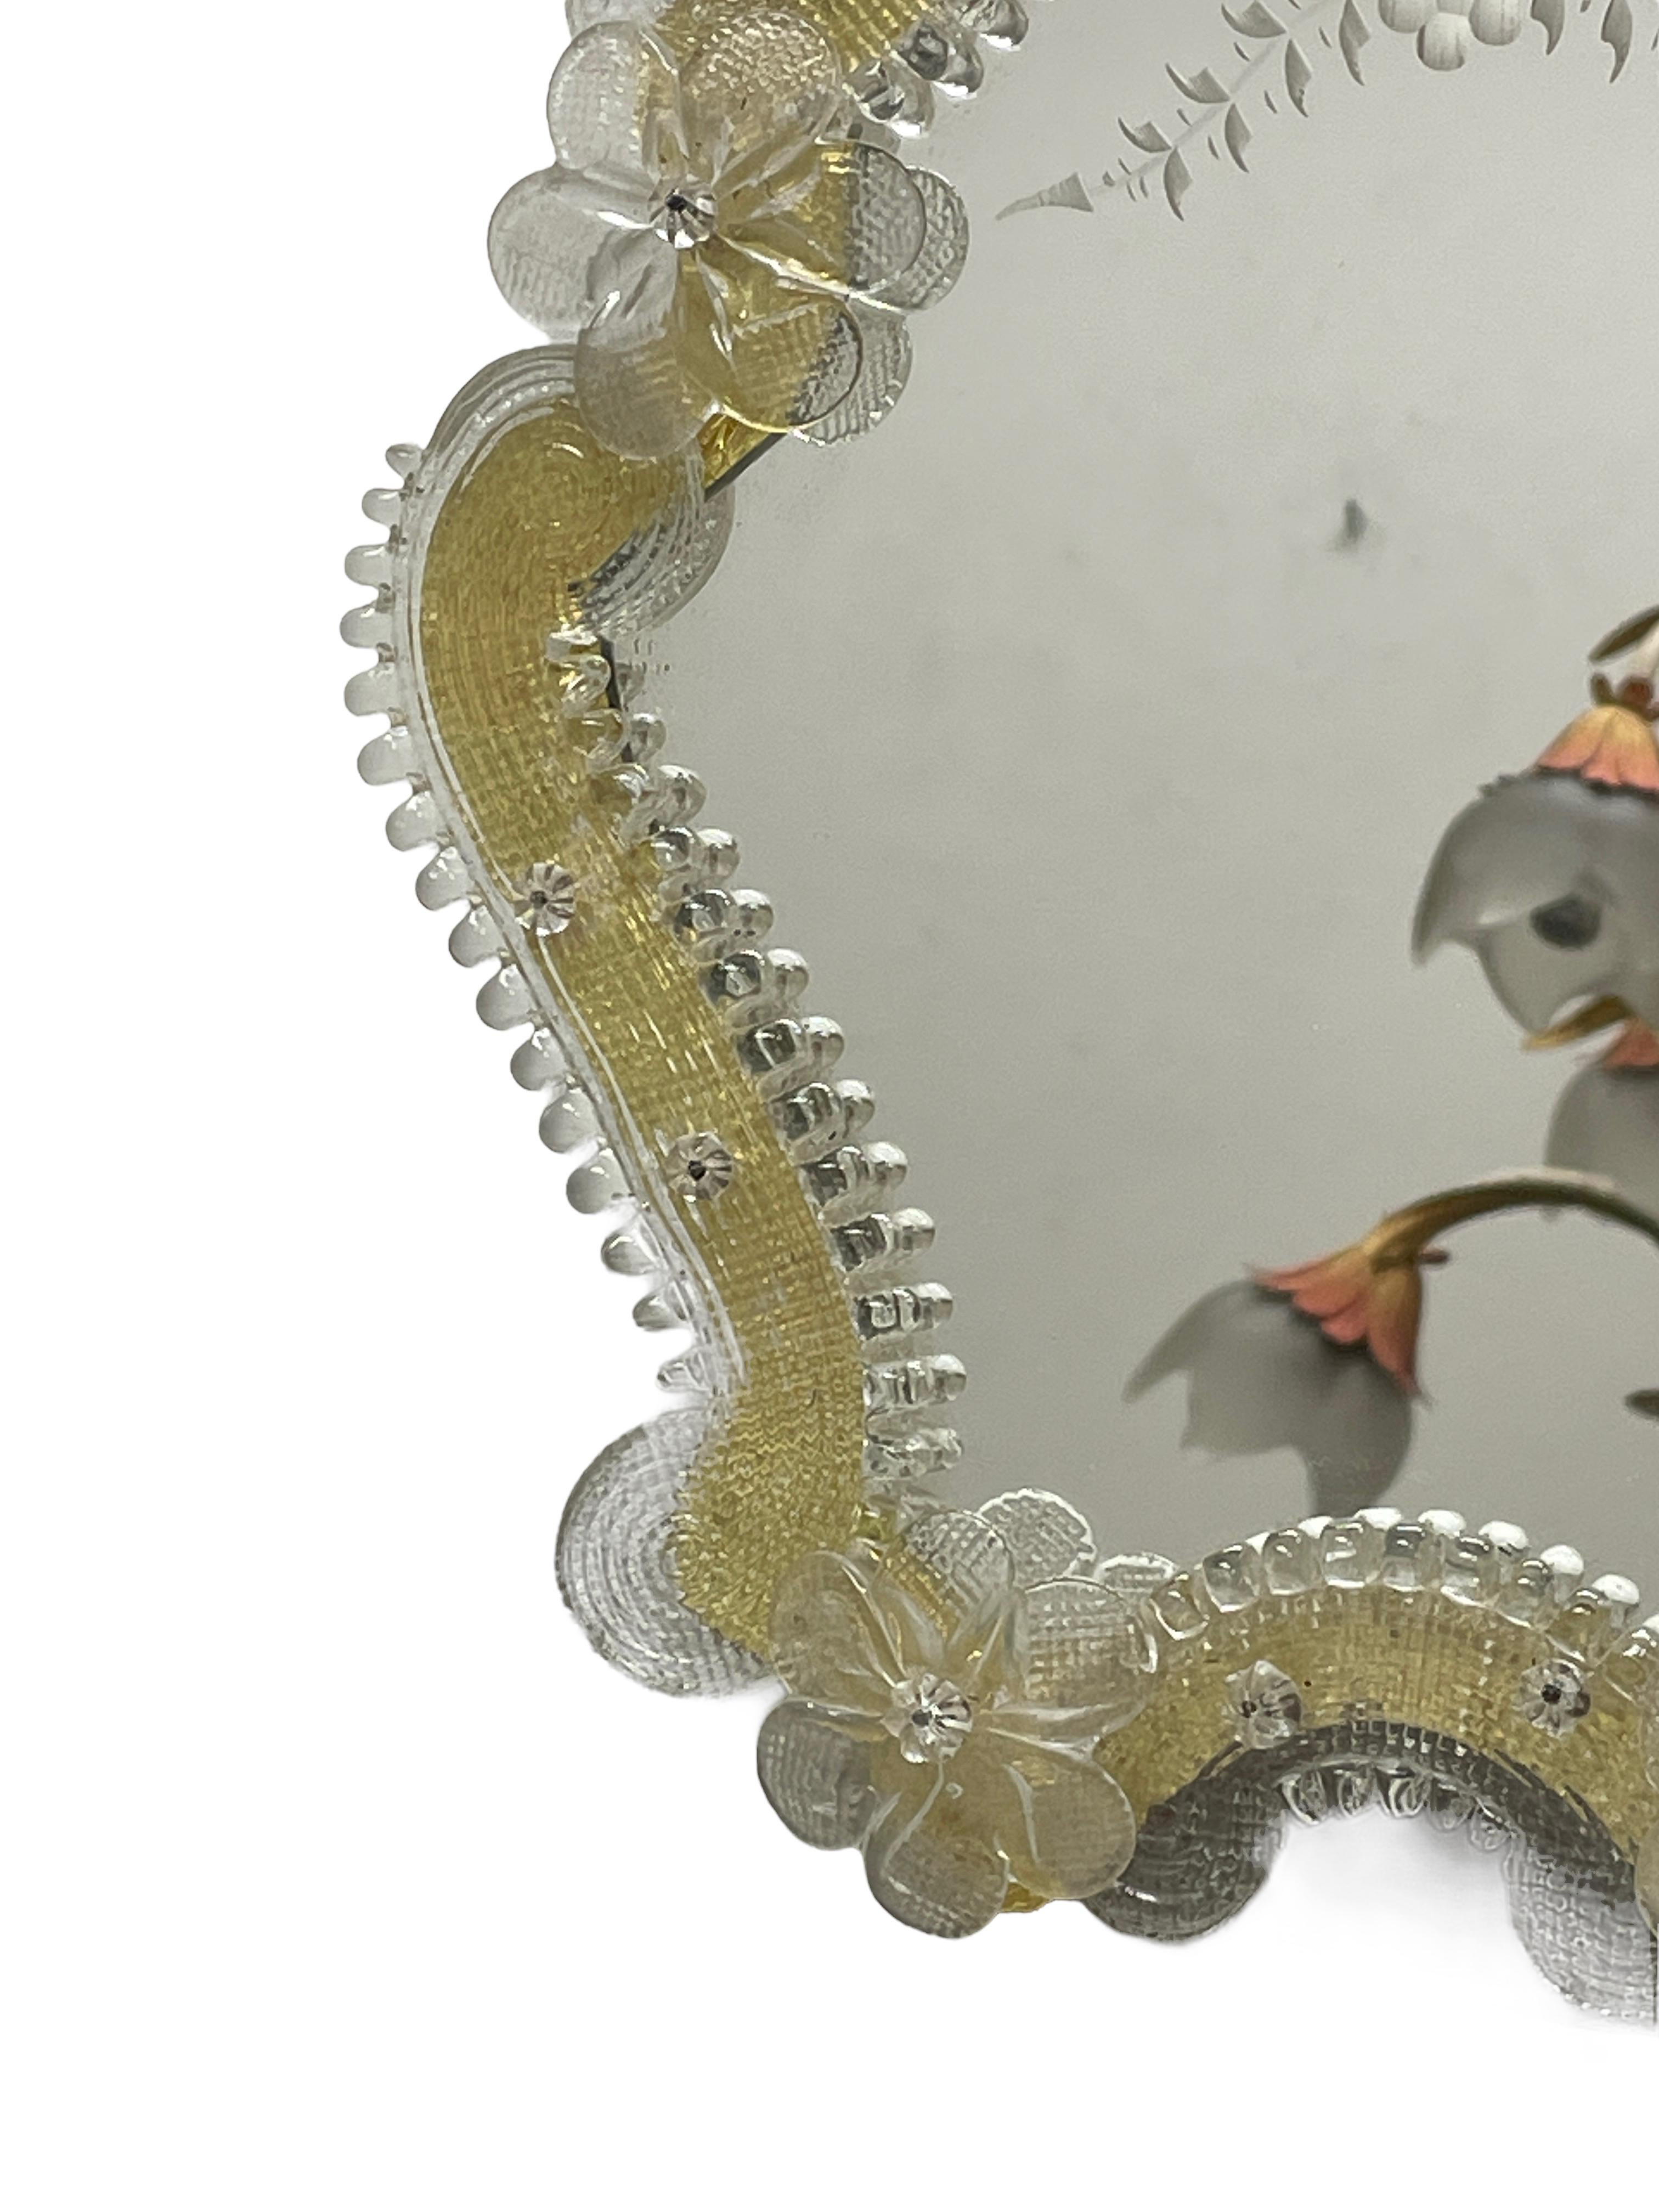 Un magnifique miroir de courtoisie en verre de Murano entouré de fleurs en verre faites à la main. Avec des signes mineurs d'usure comme prévu avec l'âge et l'utilisation. Une belle addition à tout dressing.